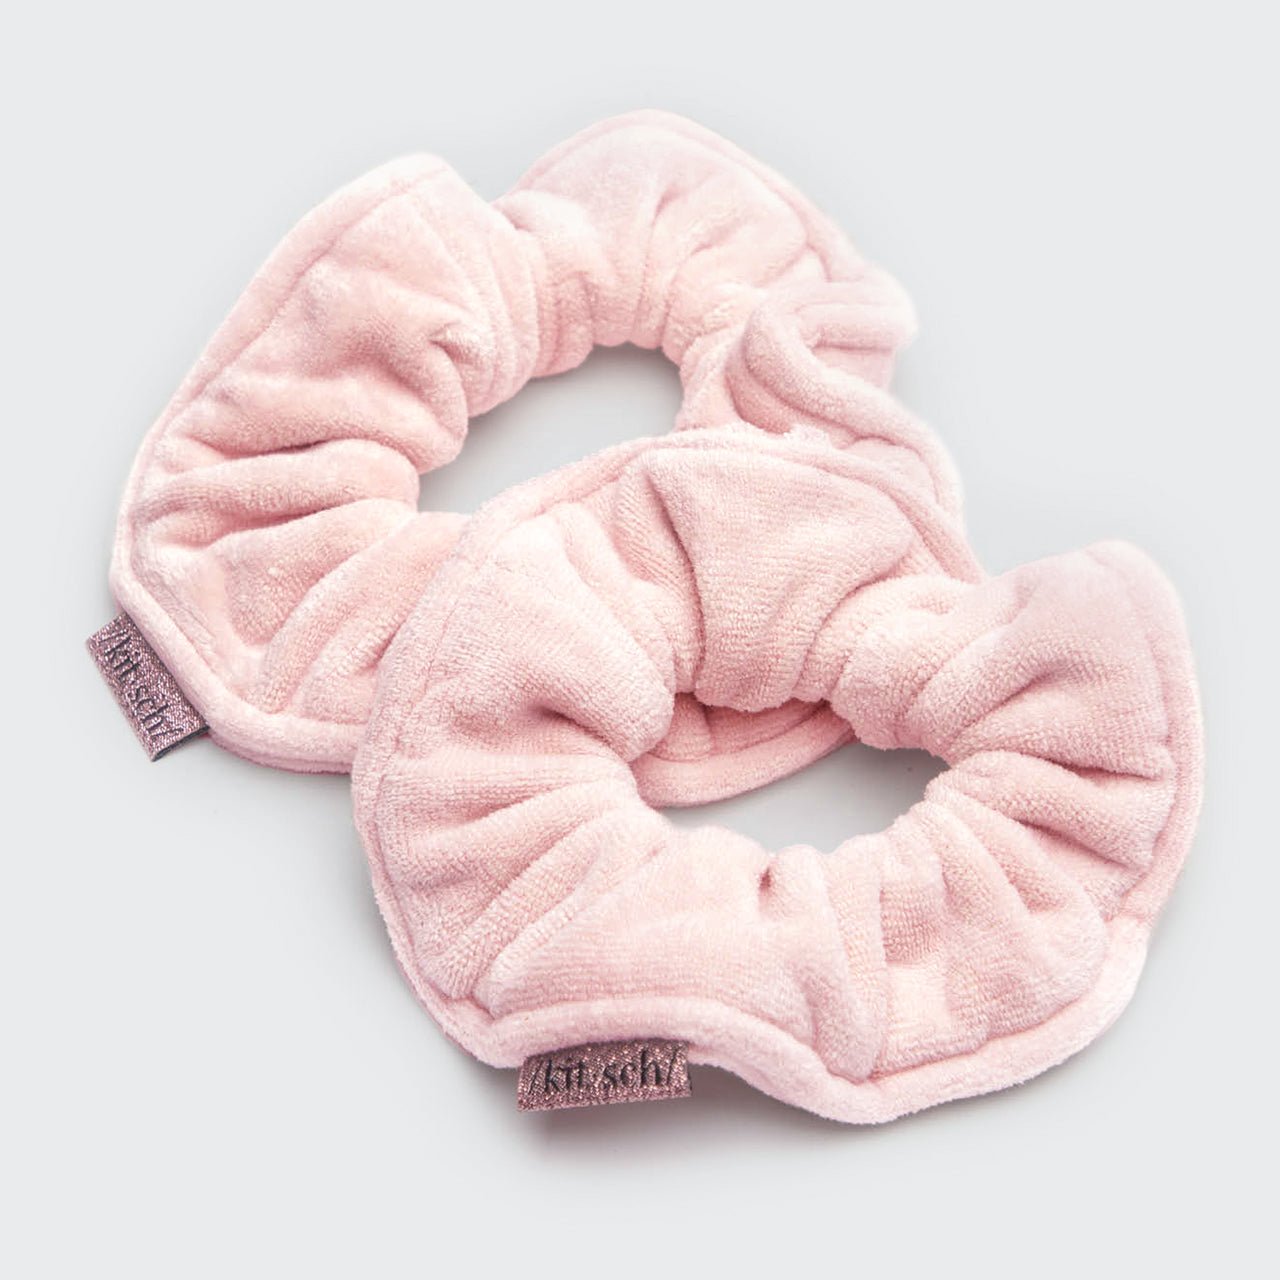 Πατενταρισμένες πετσέτες Microfiber Scrunchies - Blush